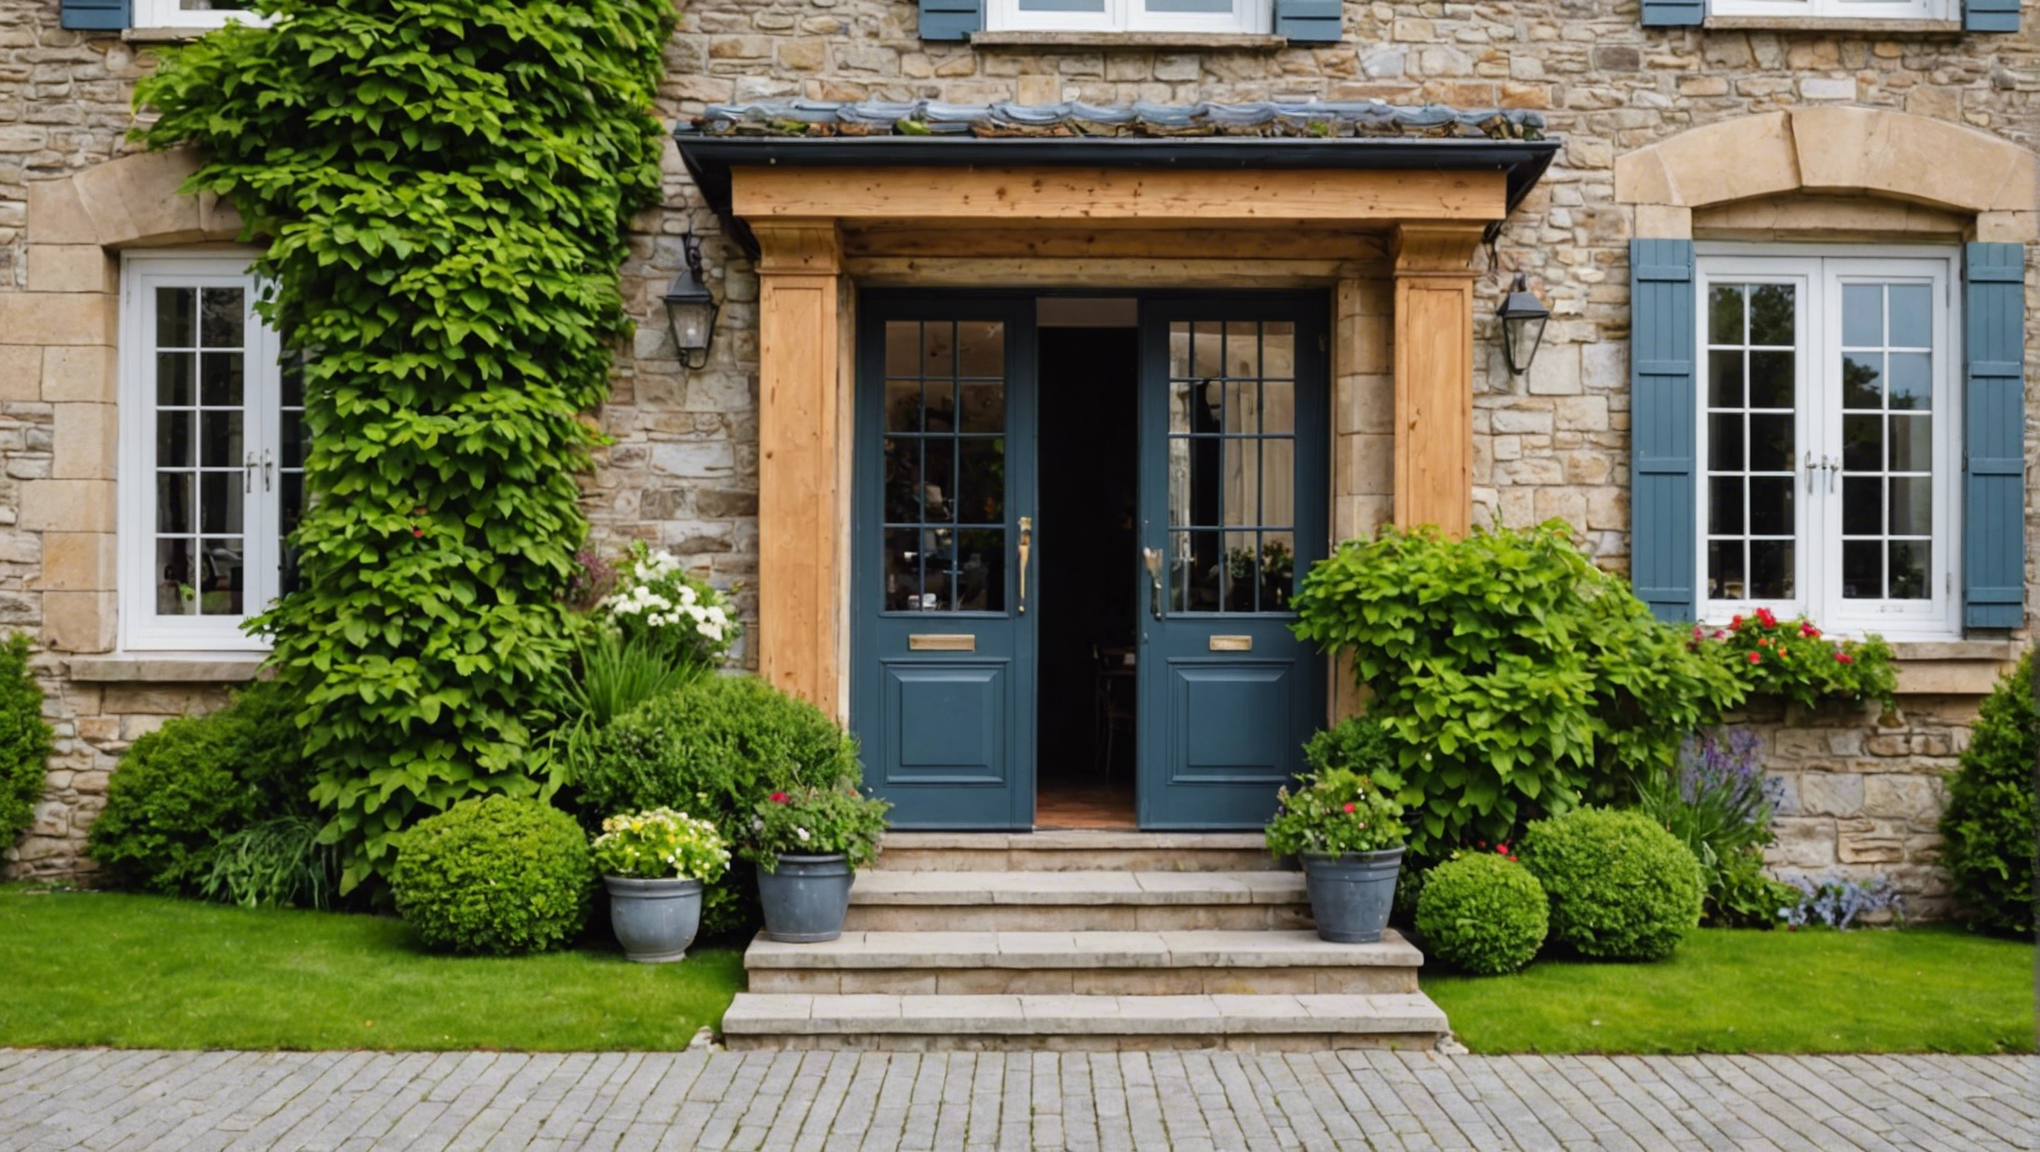 découvrez nos conseils pour choisir la meilleure entrée pour le portail de votre maison et améliorer son esthétique et sa sécurité.